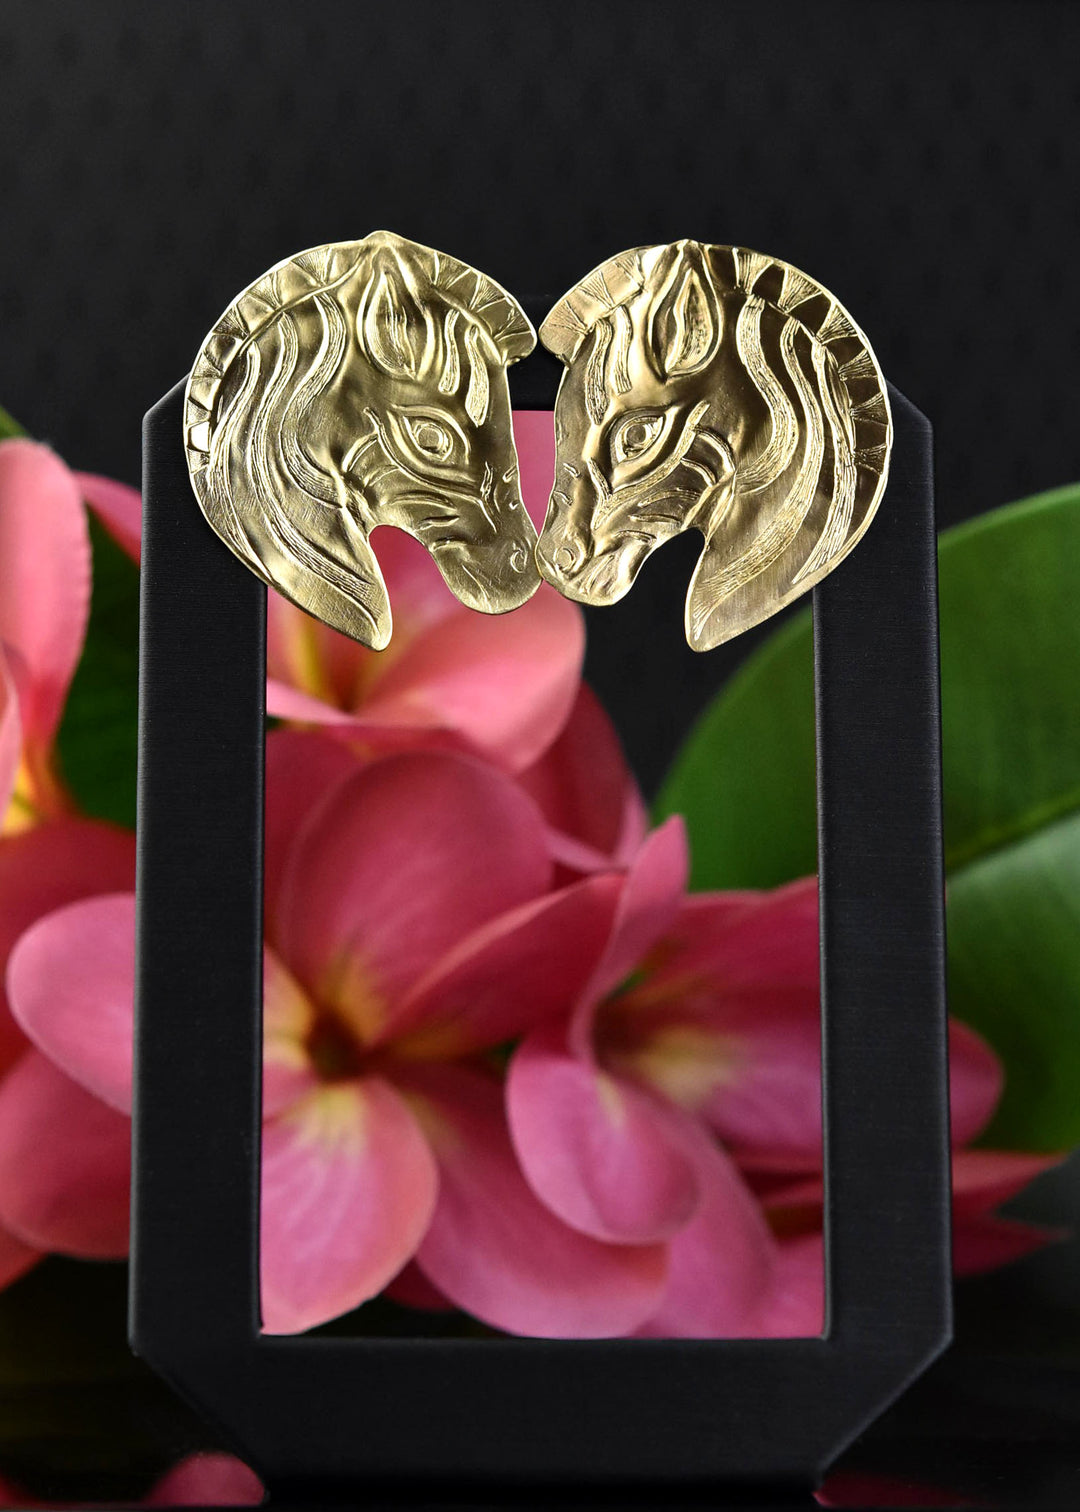 Zebra Earrings - Goldmakers Fine Jewelry